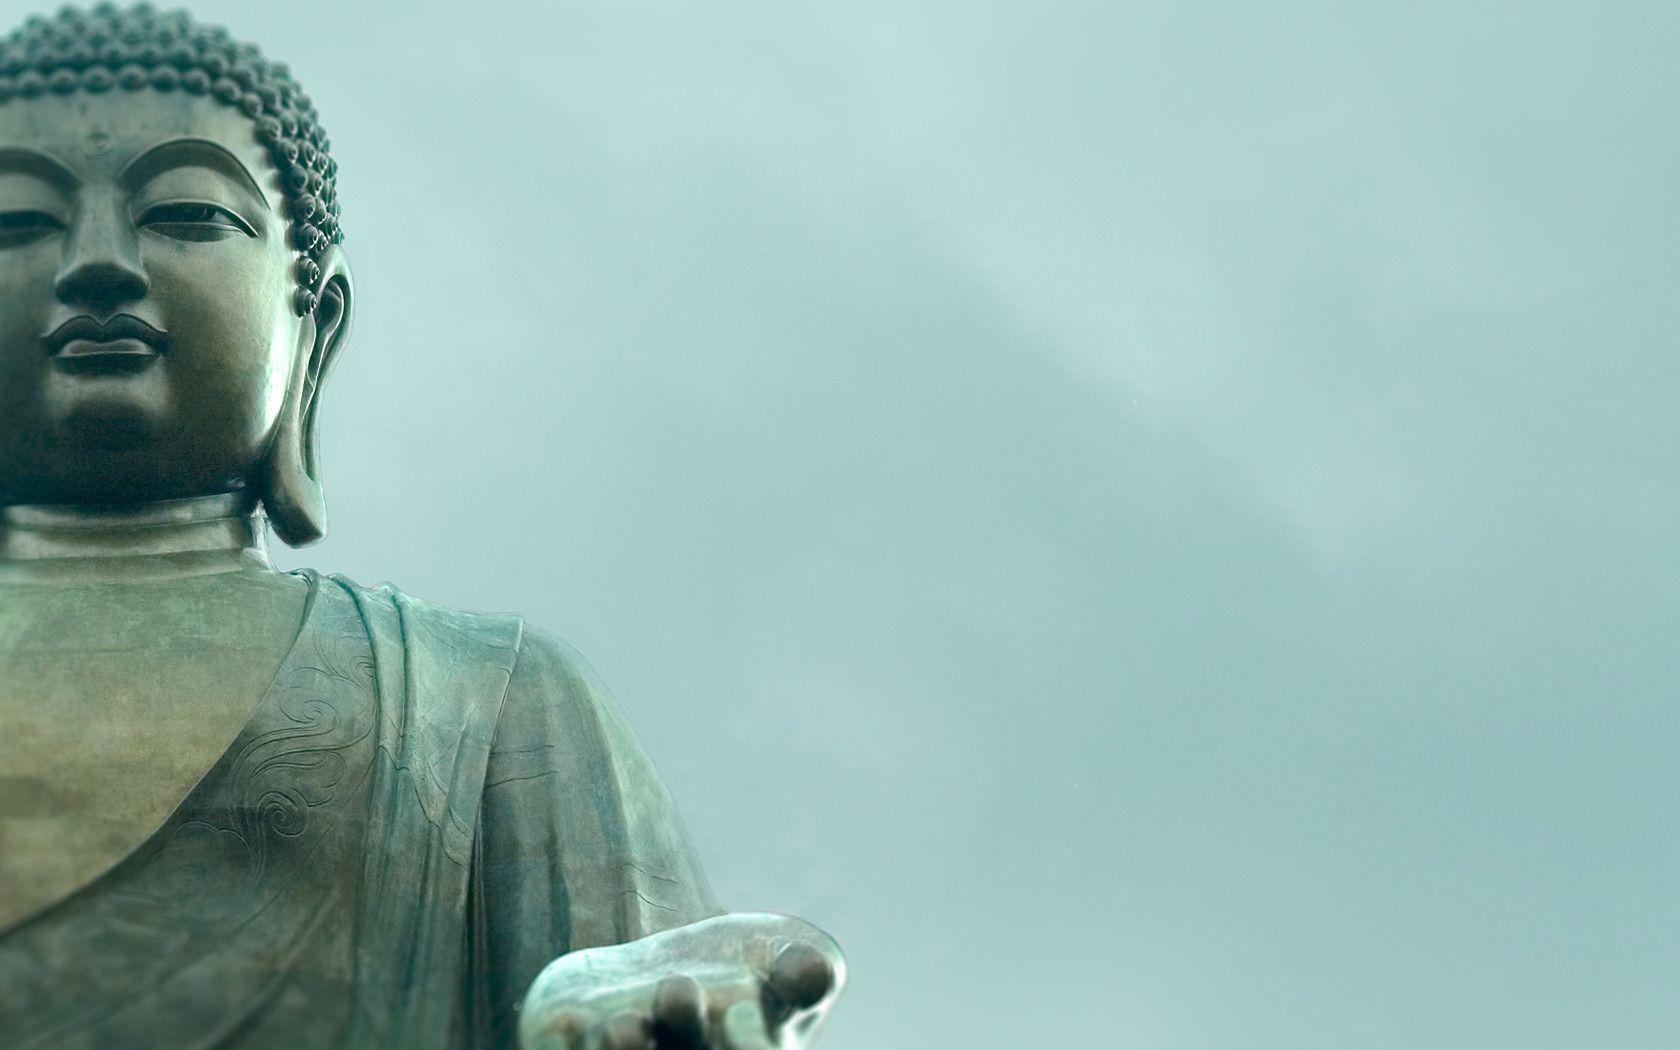 Buddha. wallpaper, HD wallpaper, background desktop